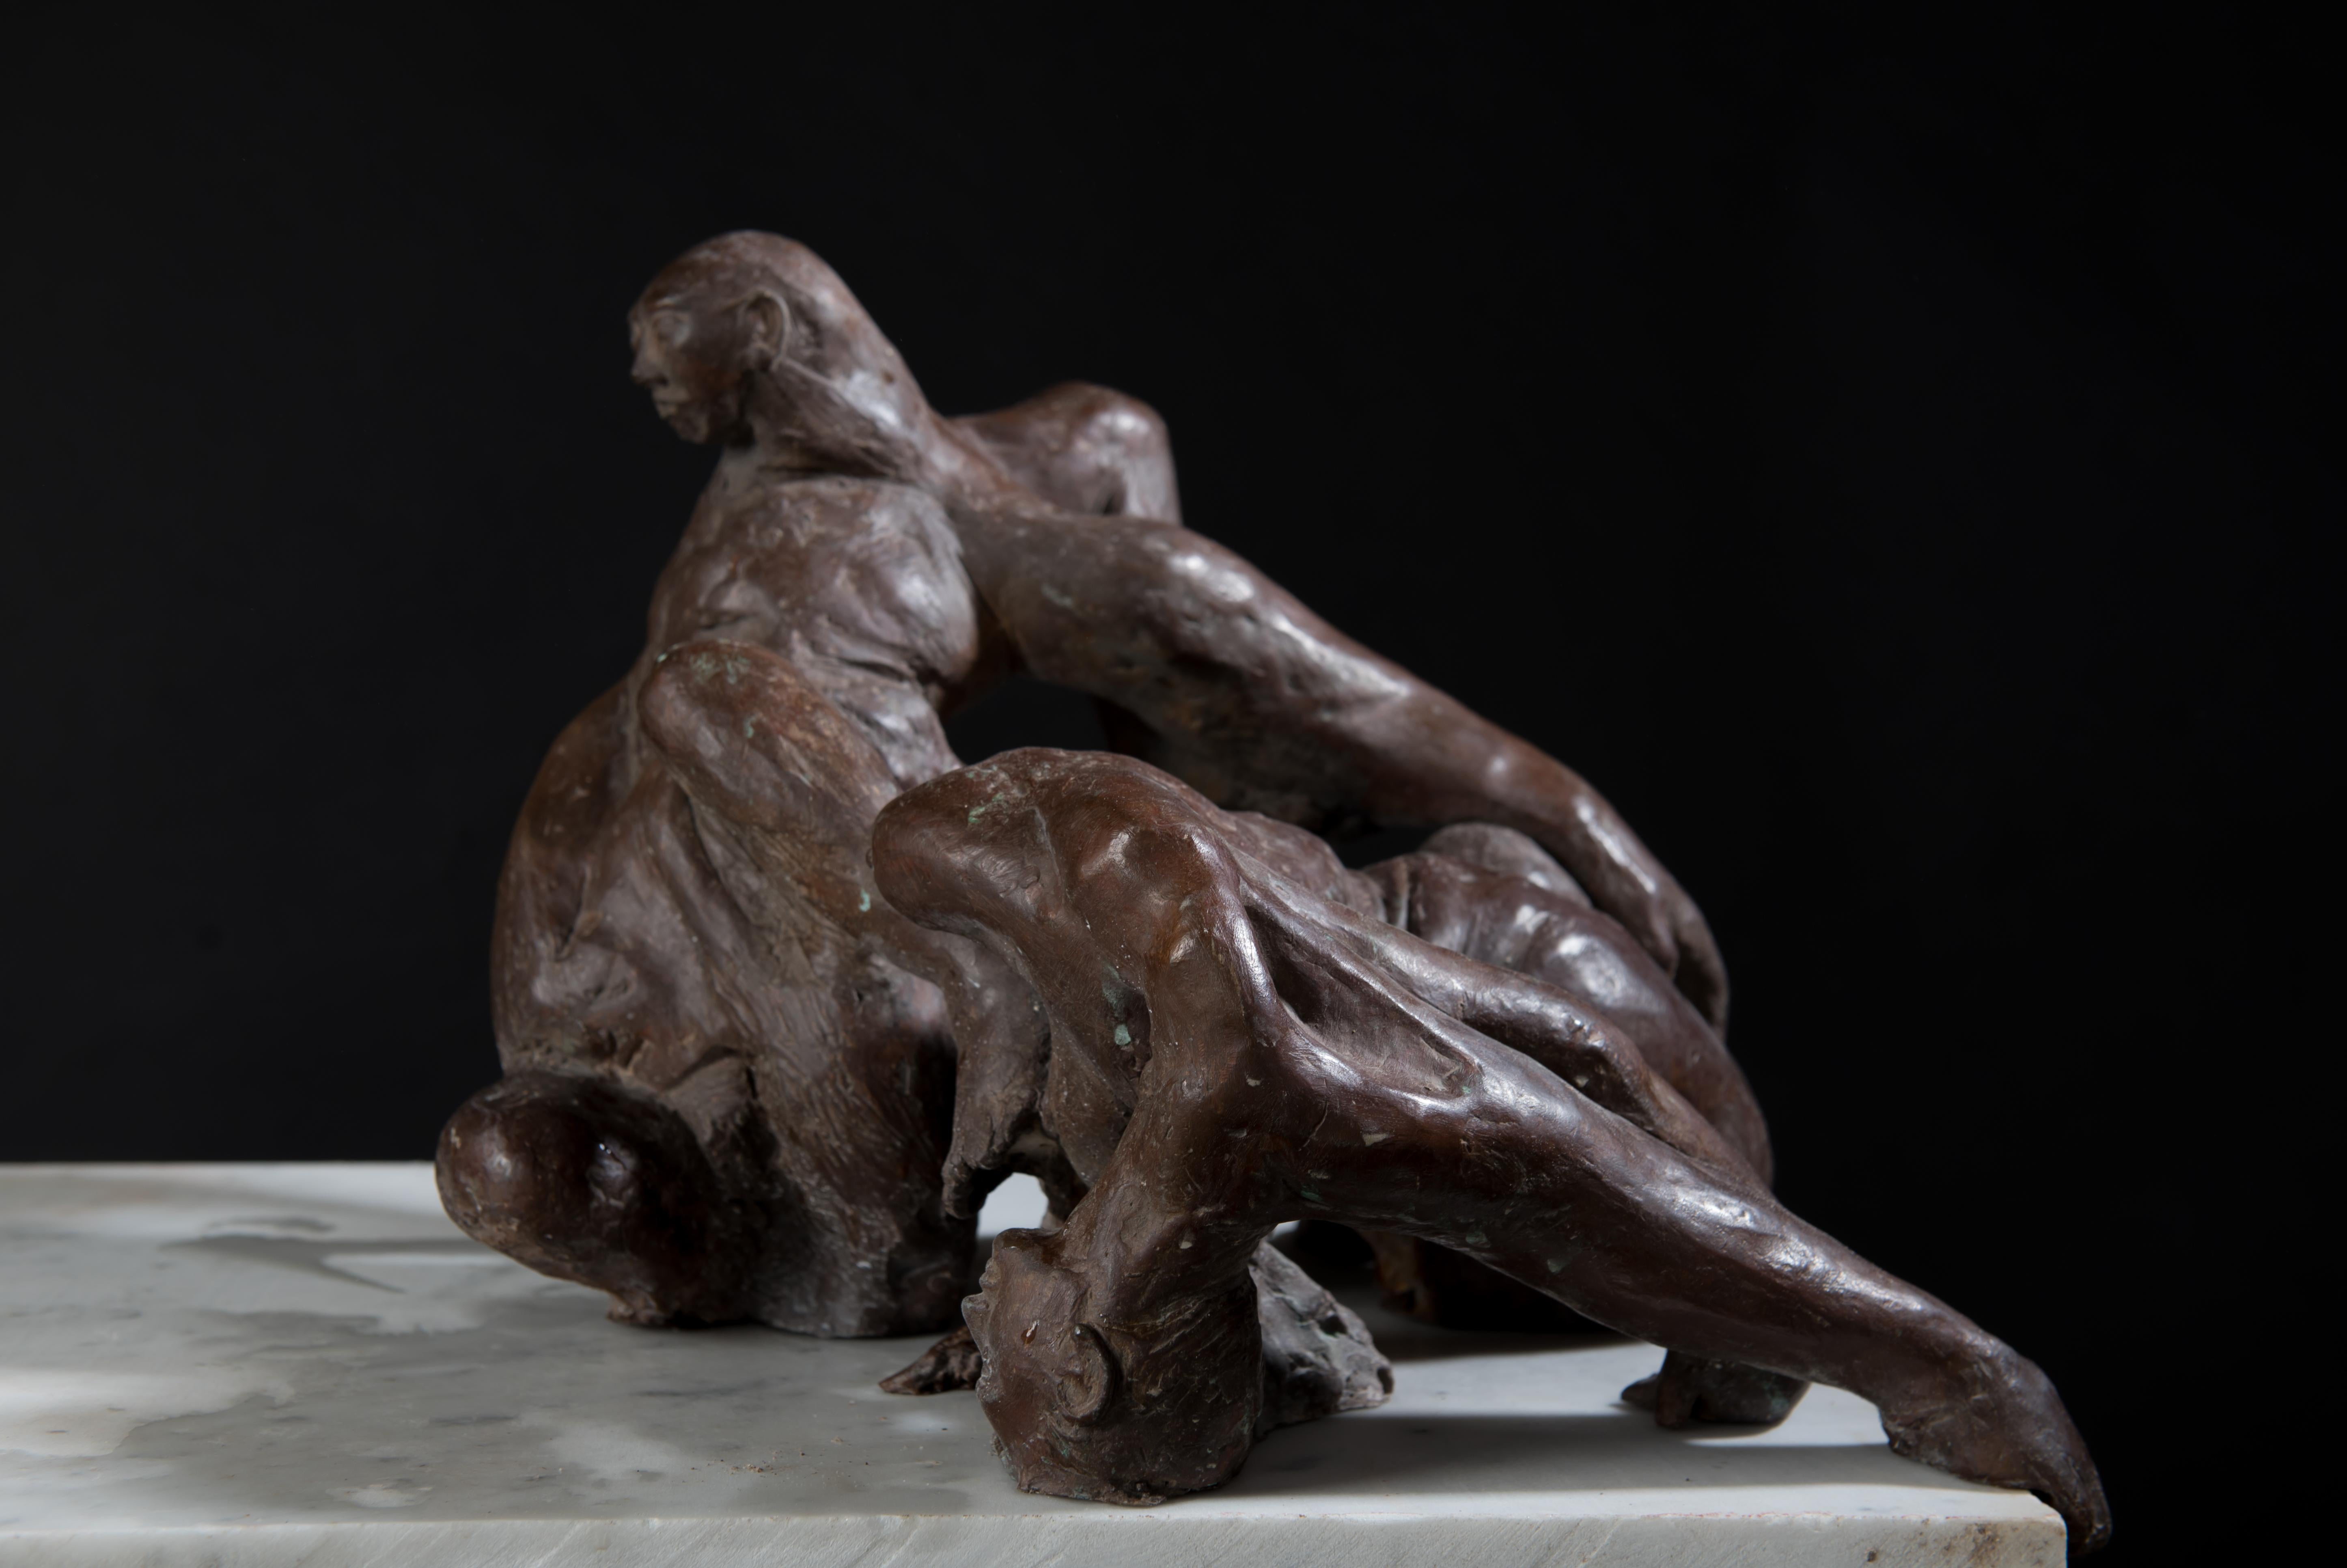 Relazioni Amore II - contemporary Italian figurative tabletop bronze sculpture - Sculpture by Lorenzo Vignoli